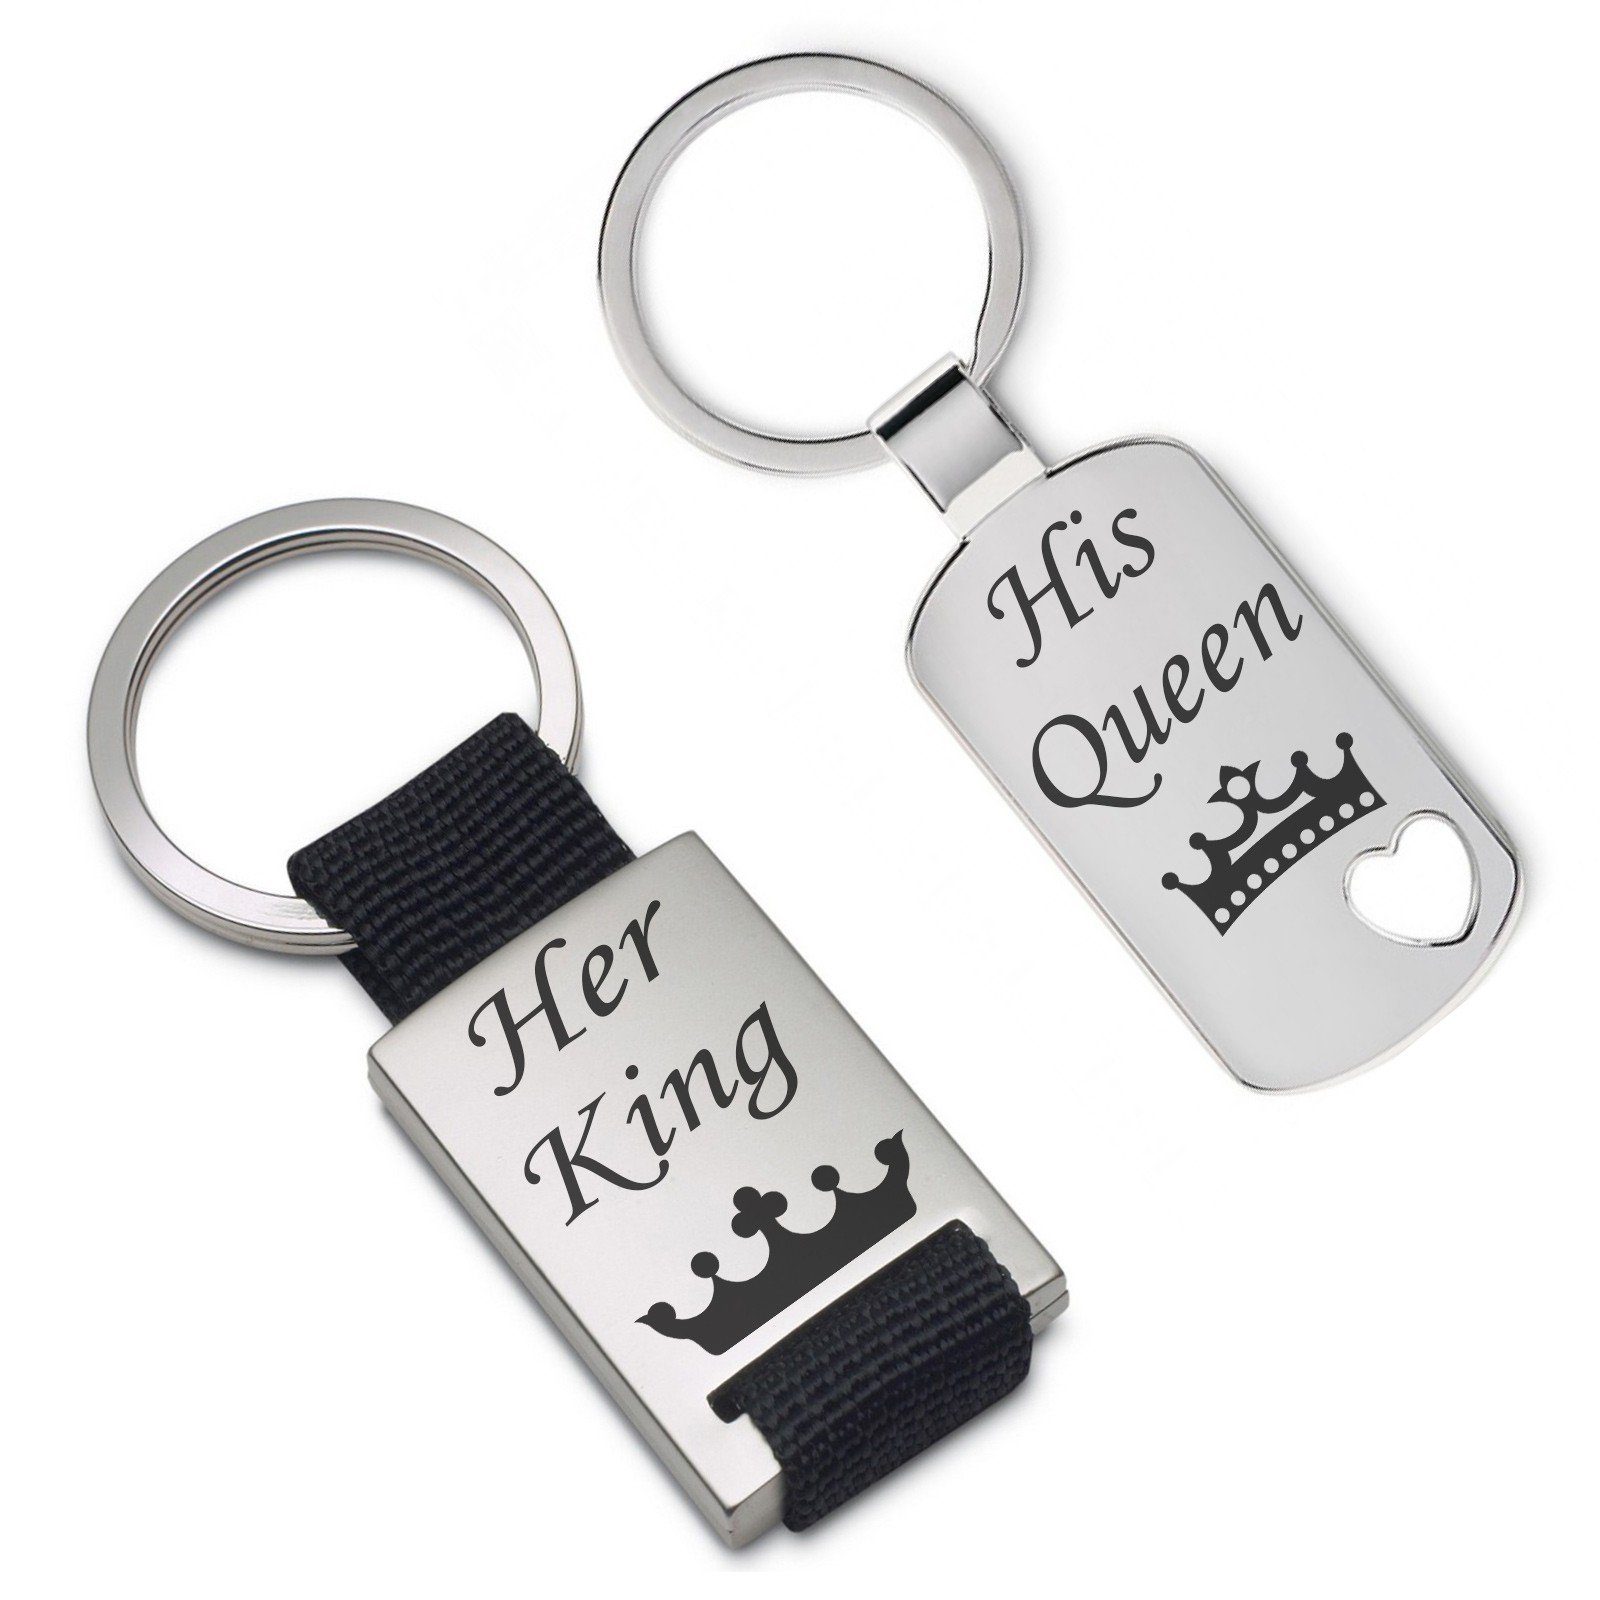 Lieblingsmensch Schlüsselanhänger Set - His Queen - Her King - ein tolles Geschenk und Glücksbringer (2 Schlüsselanhänger mit Gravur, inklusive Schlüsselring), Robuste und filigrane Lasergravur